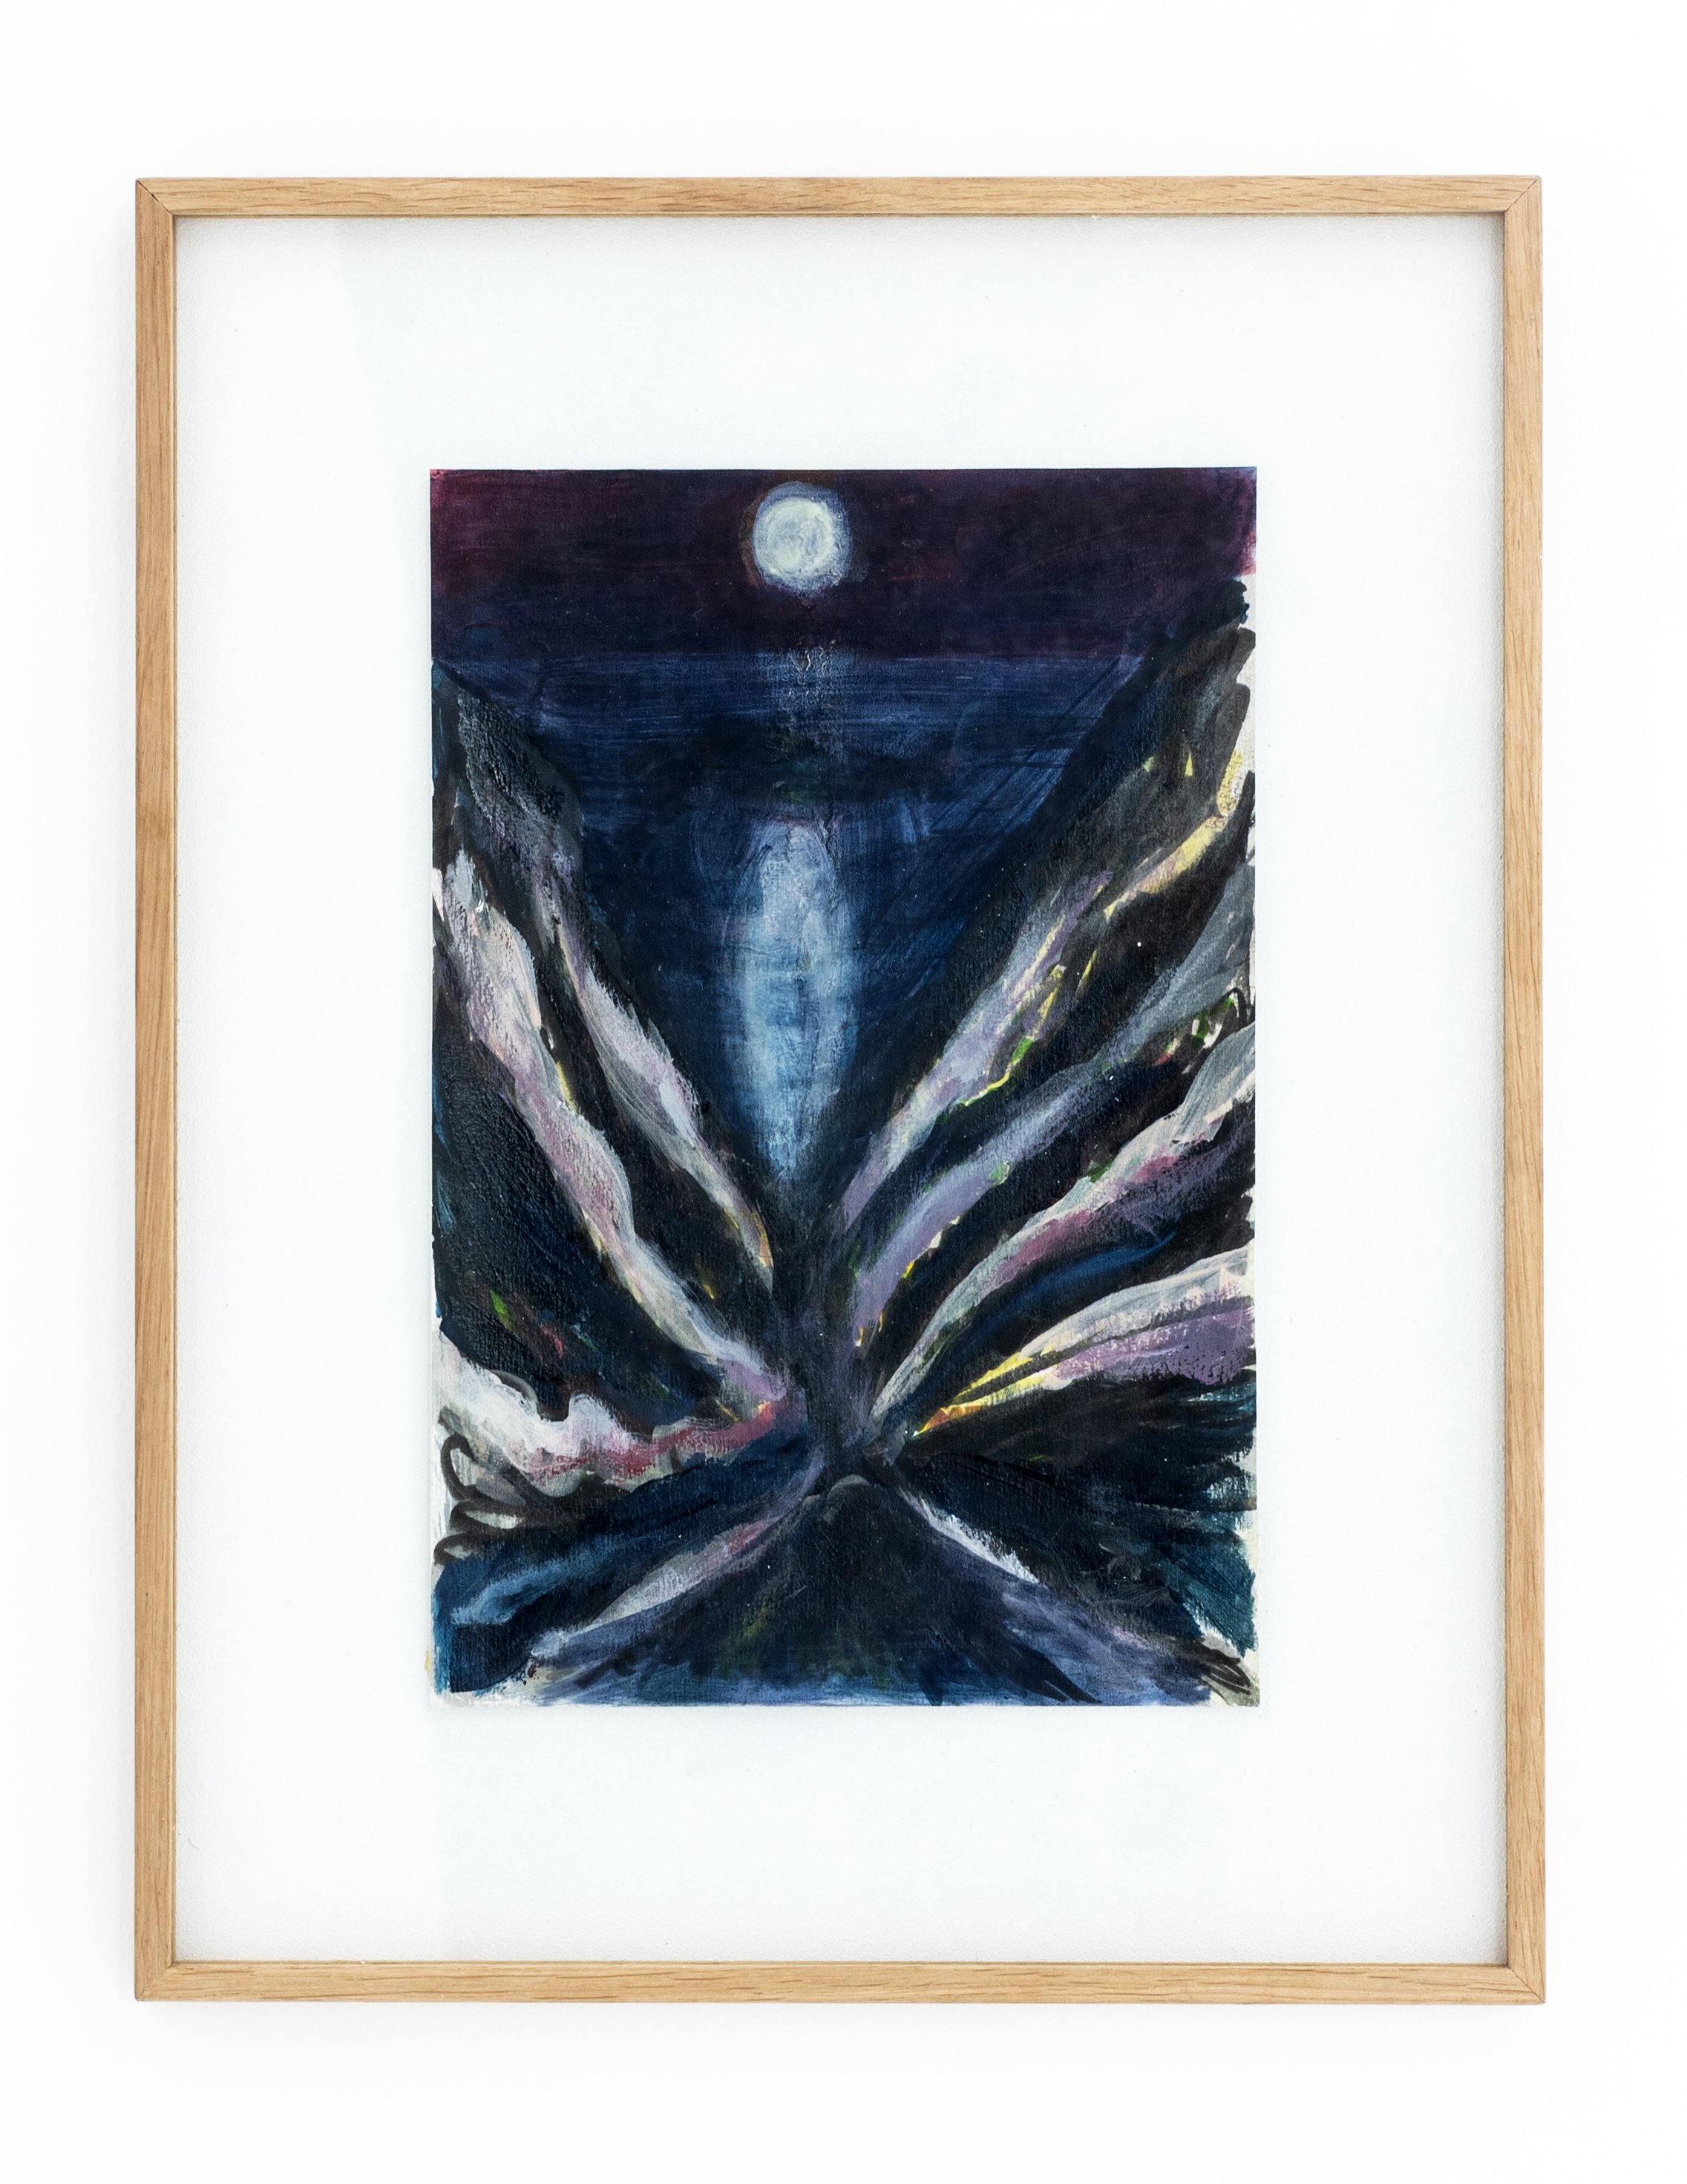   KYTHIRA , 2020, acrylique et huile sur papier, 20 x 30 cm  